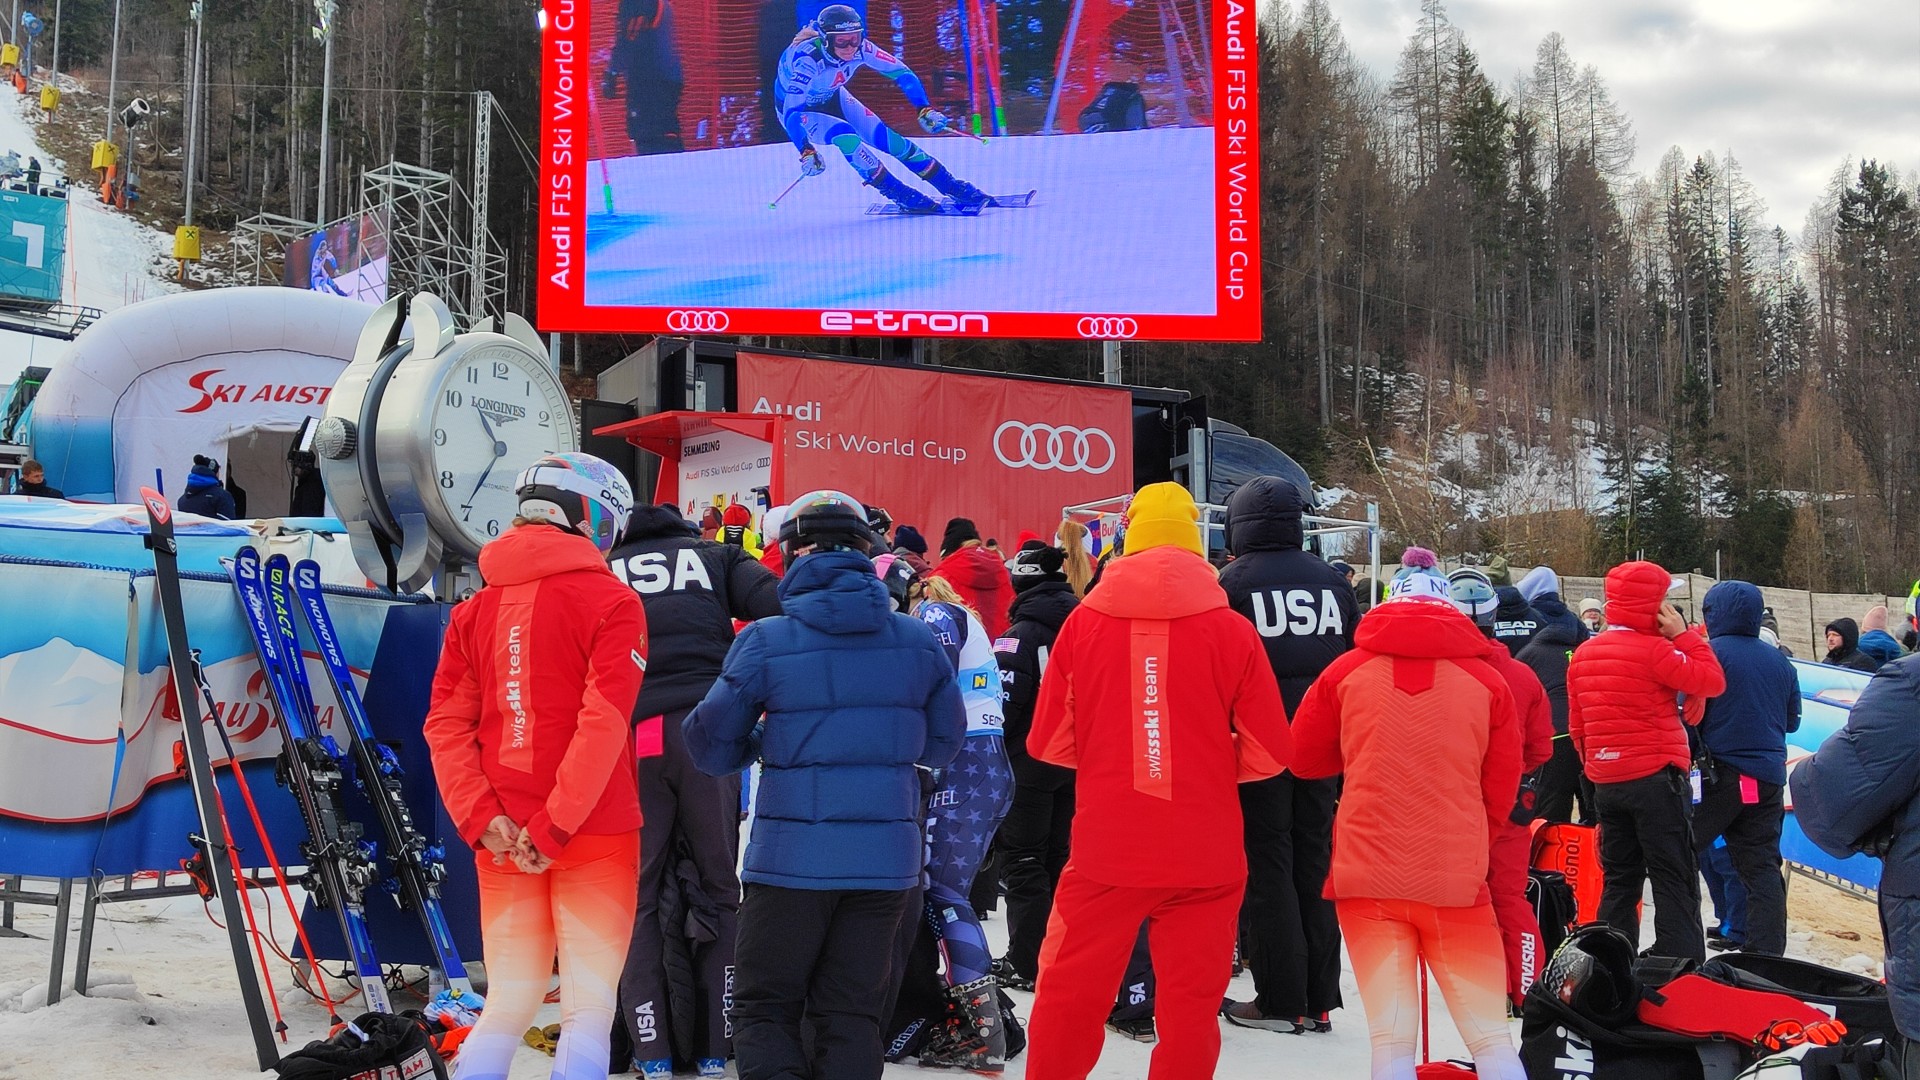 Frustrées, les Suissesses visent le slalom | SkiActu.ch